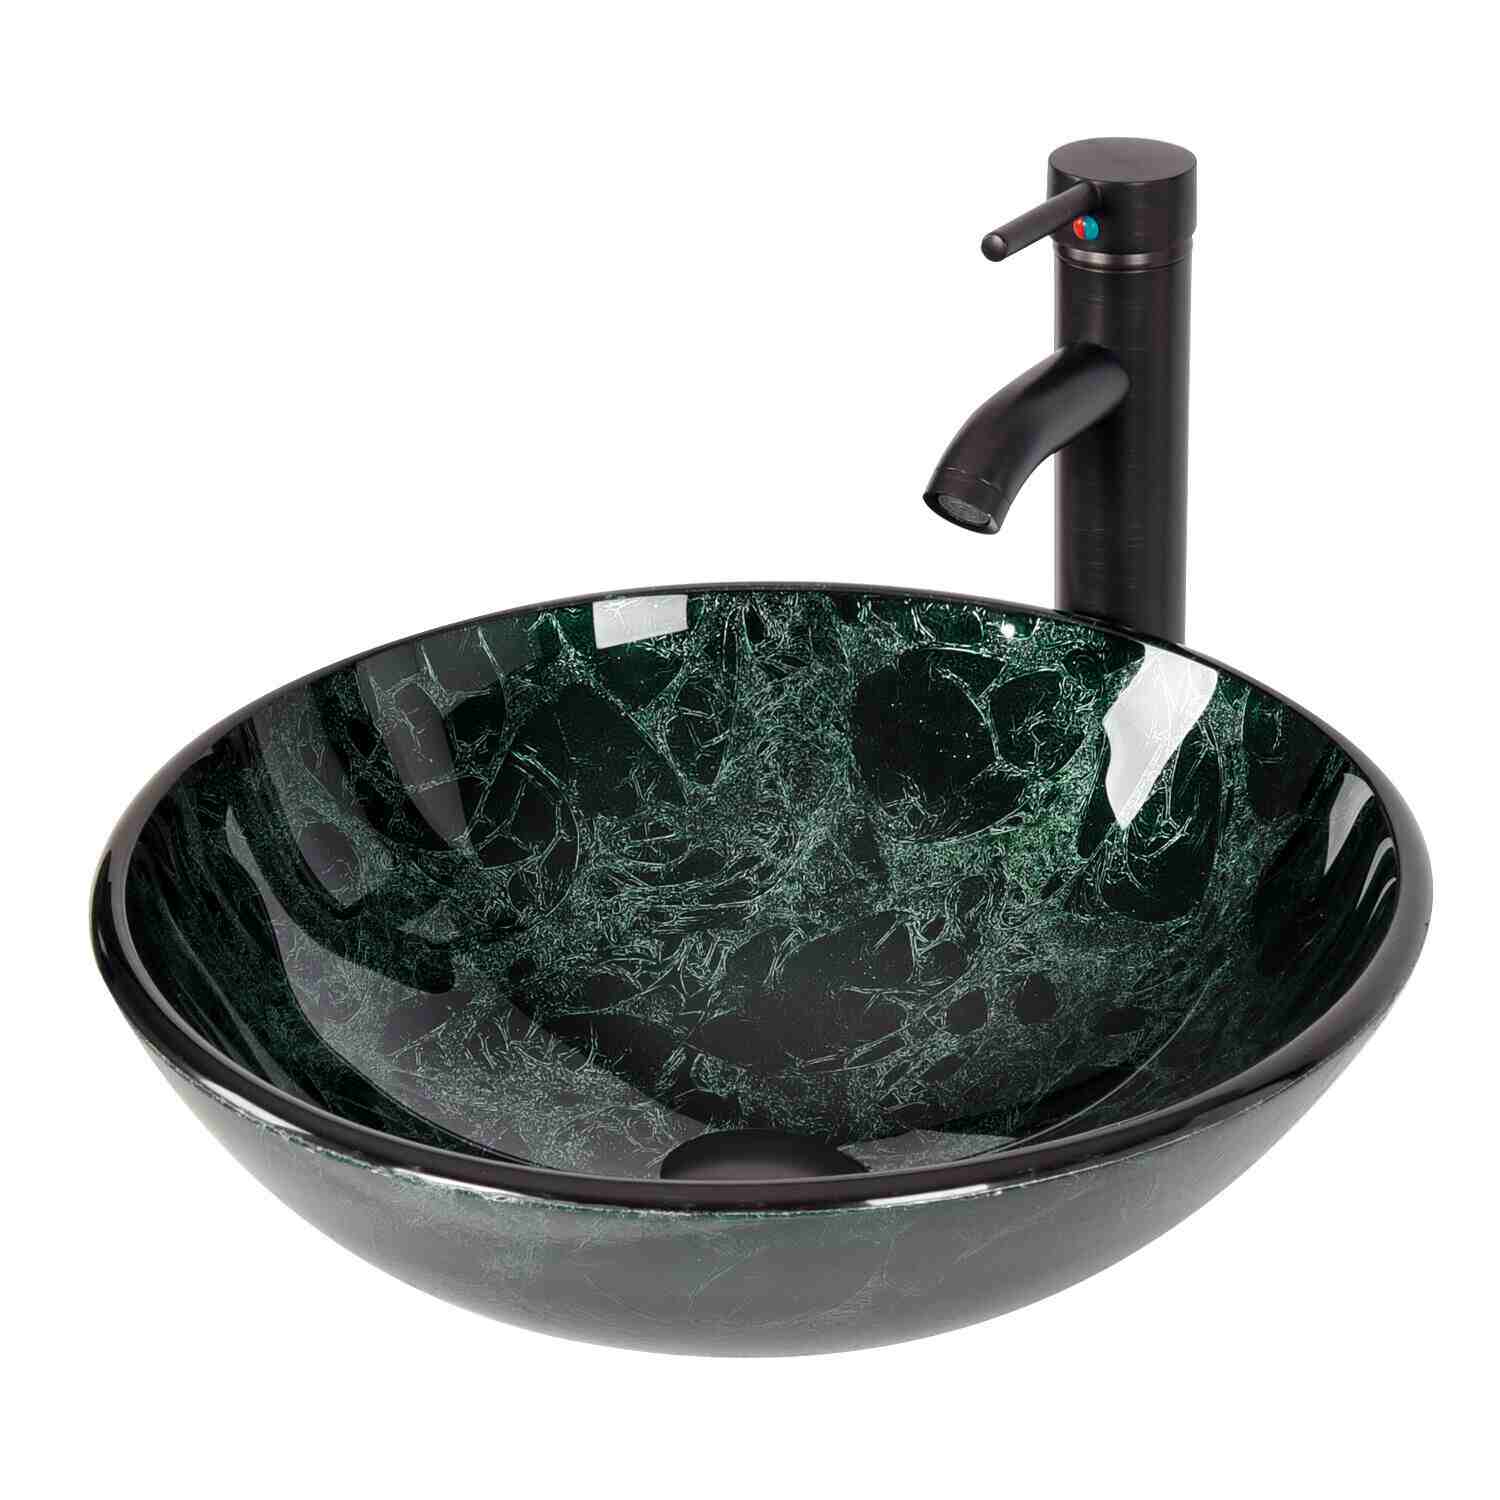 Elecwish Round Green Sink